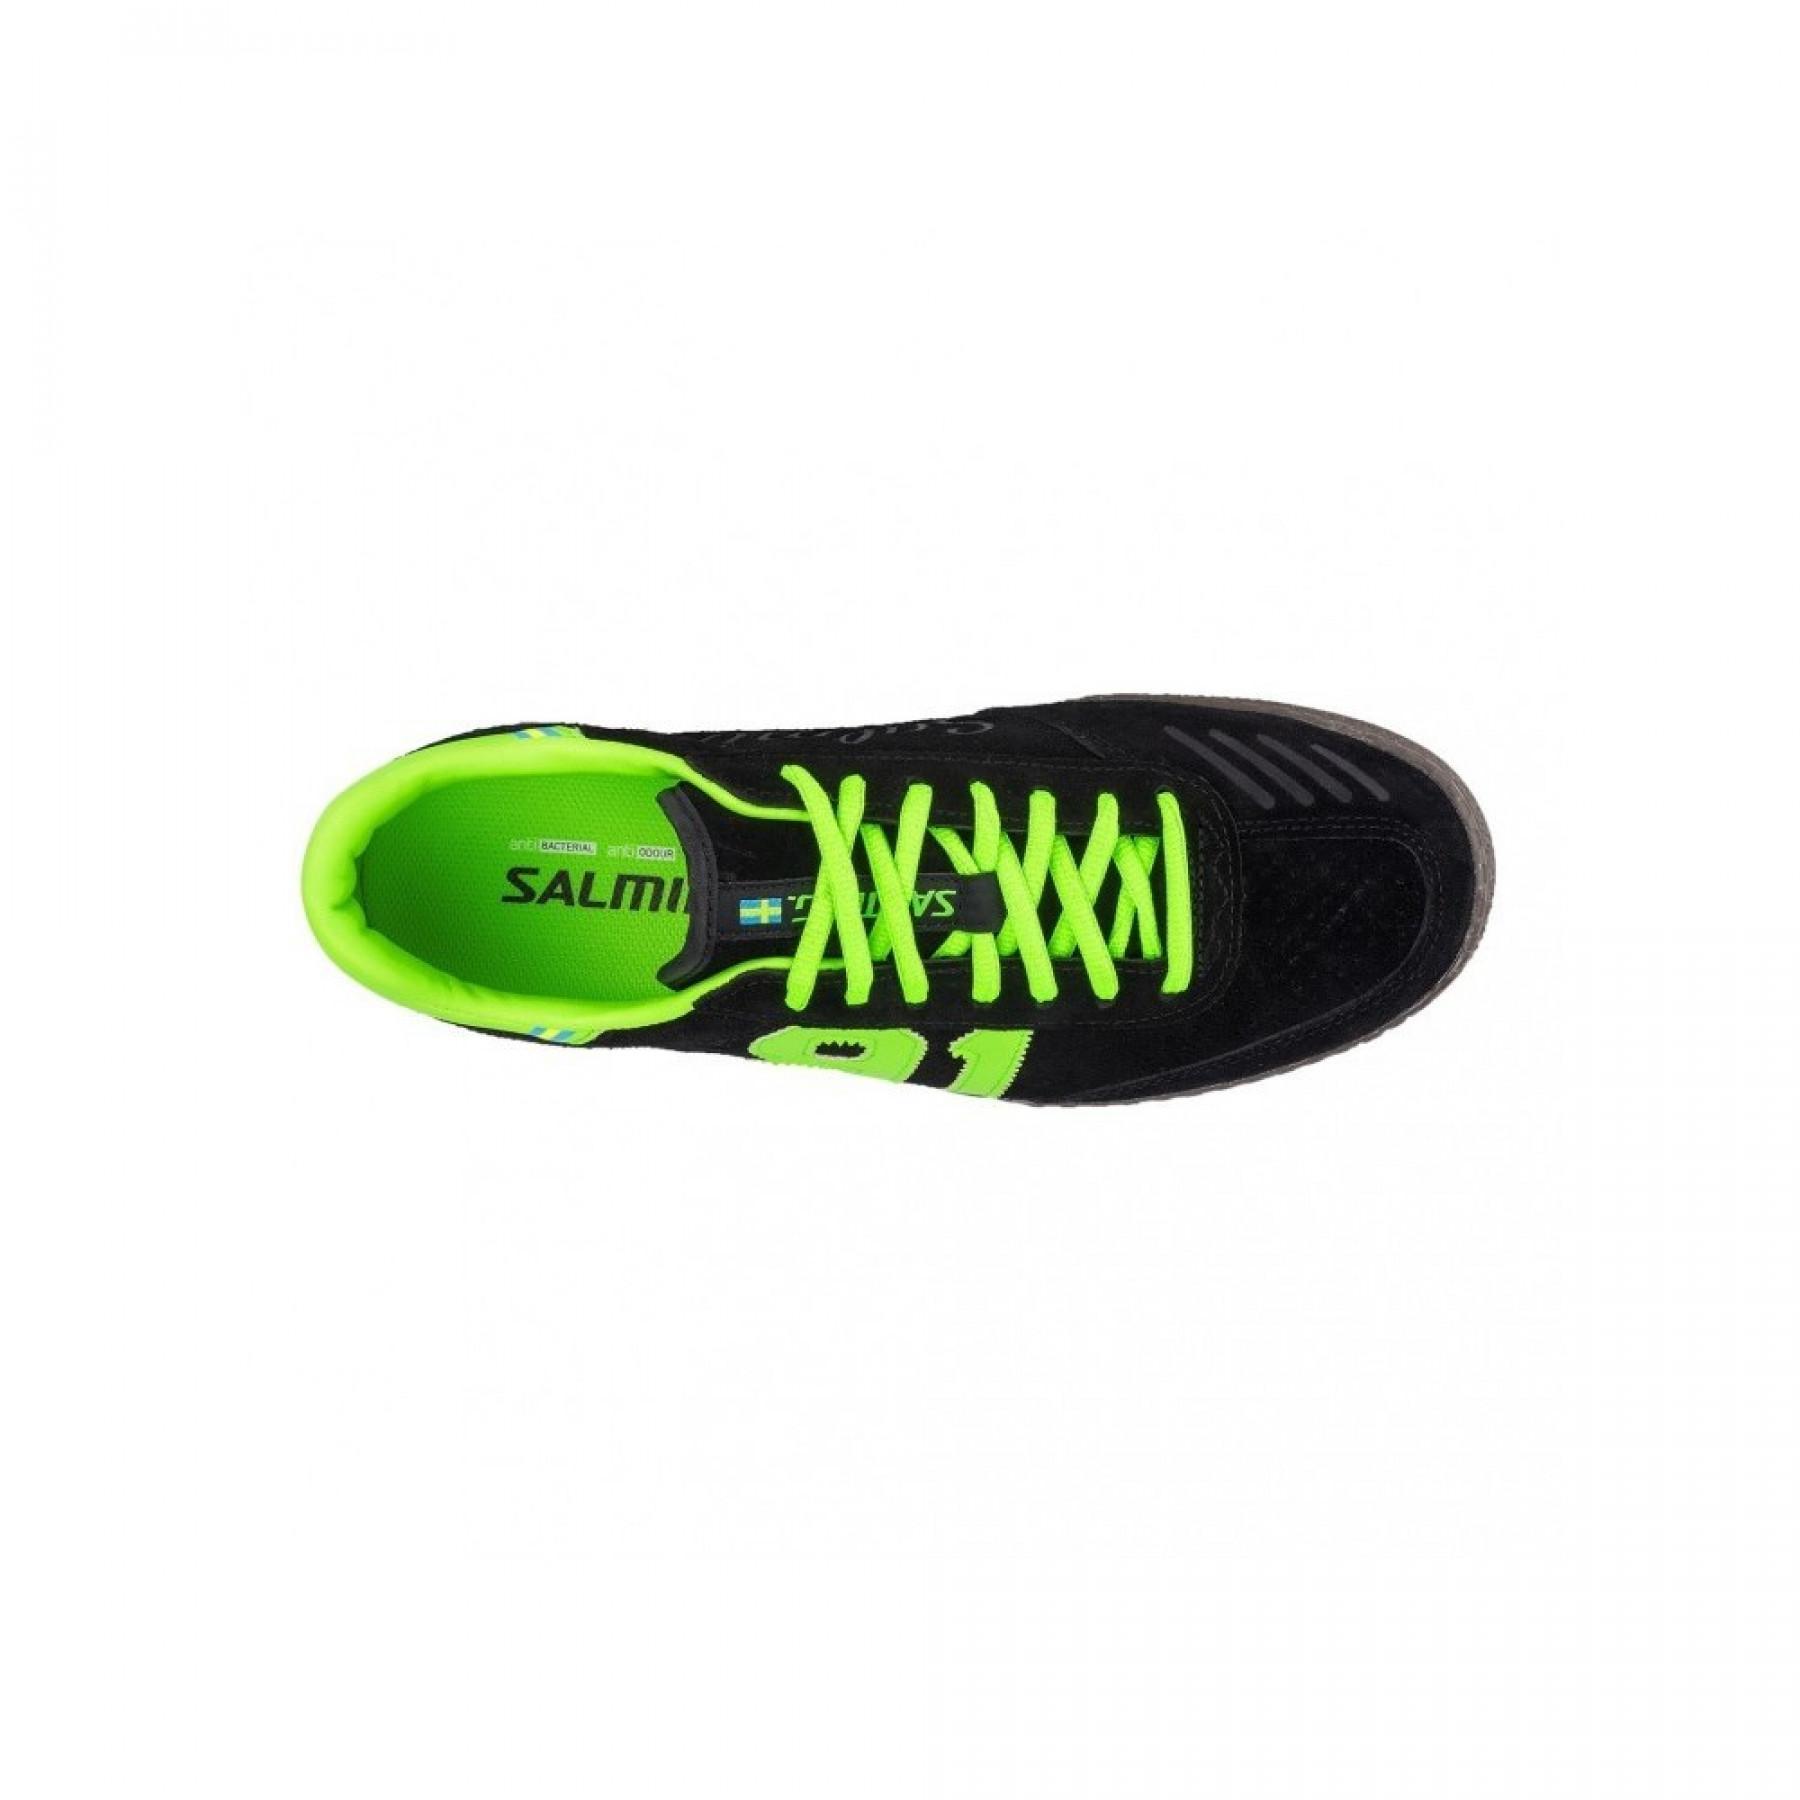 Zapatos Salming 91 handball goalie noir/gecko